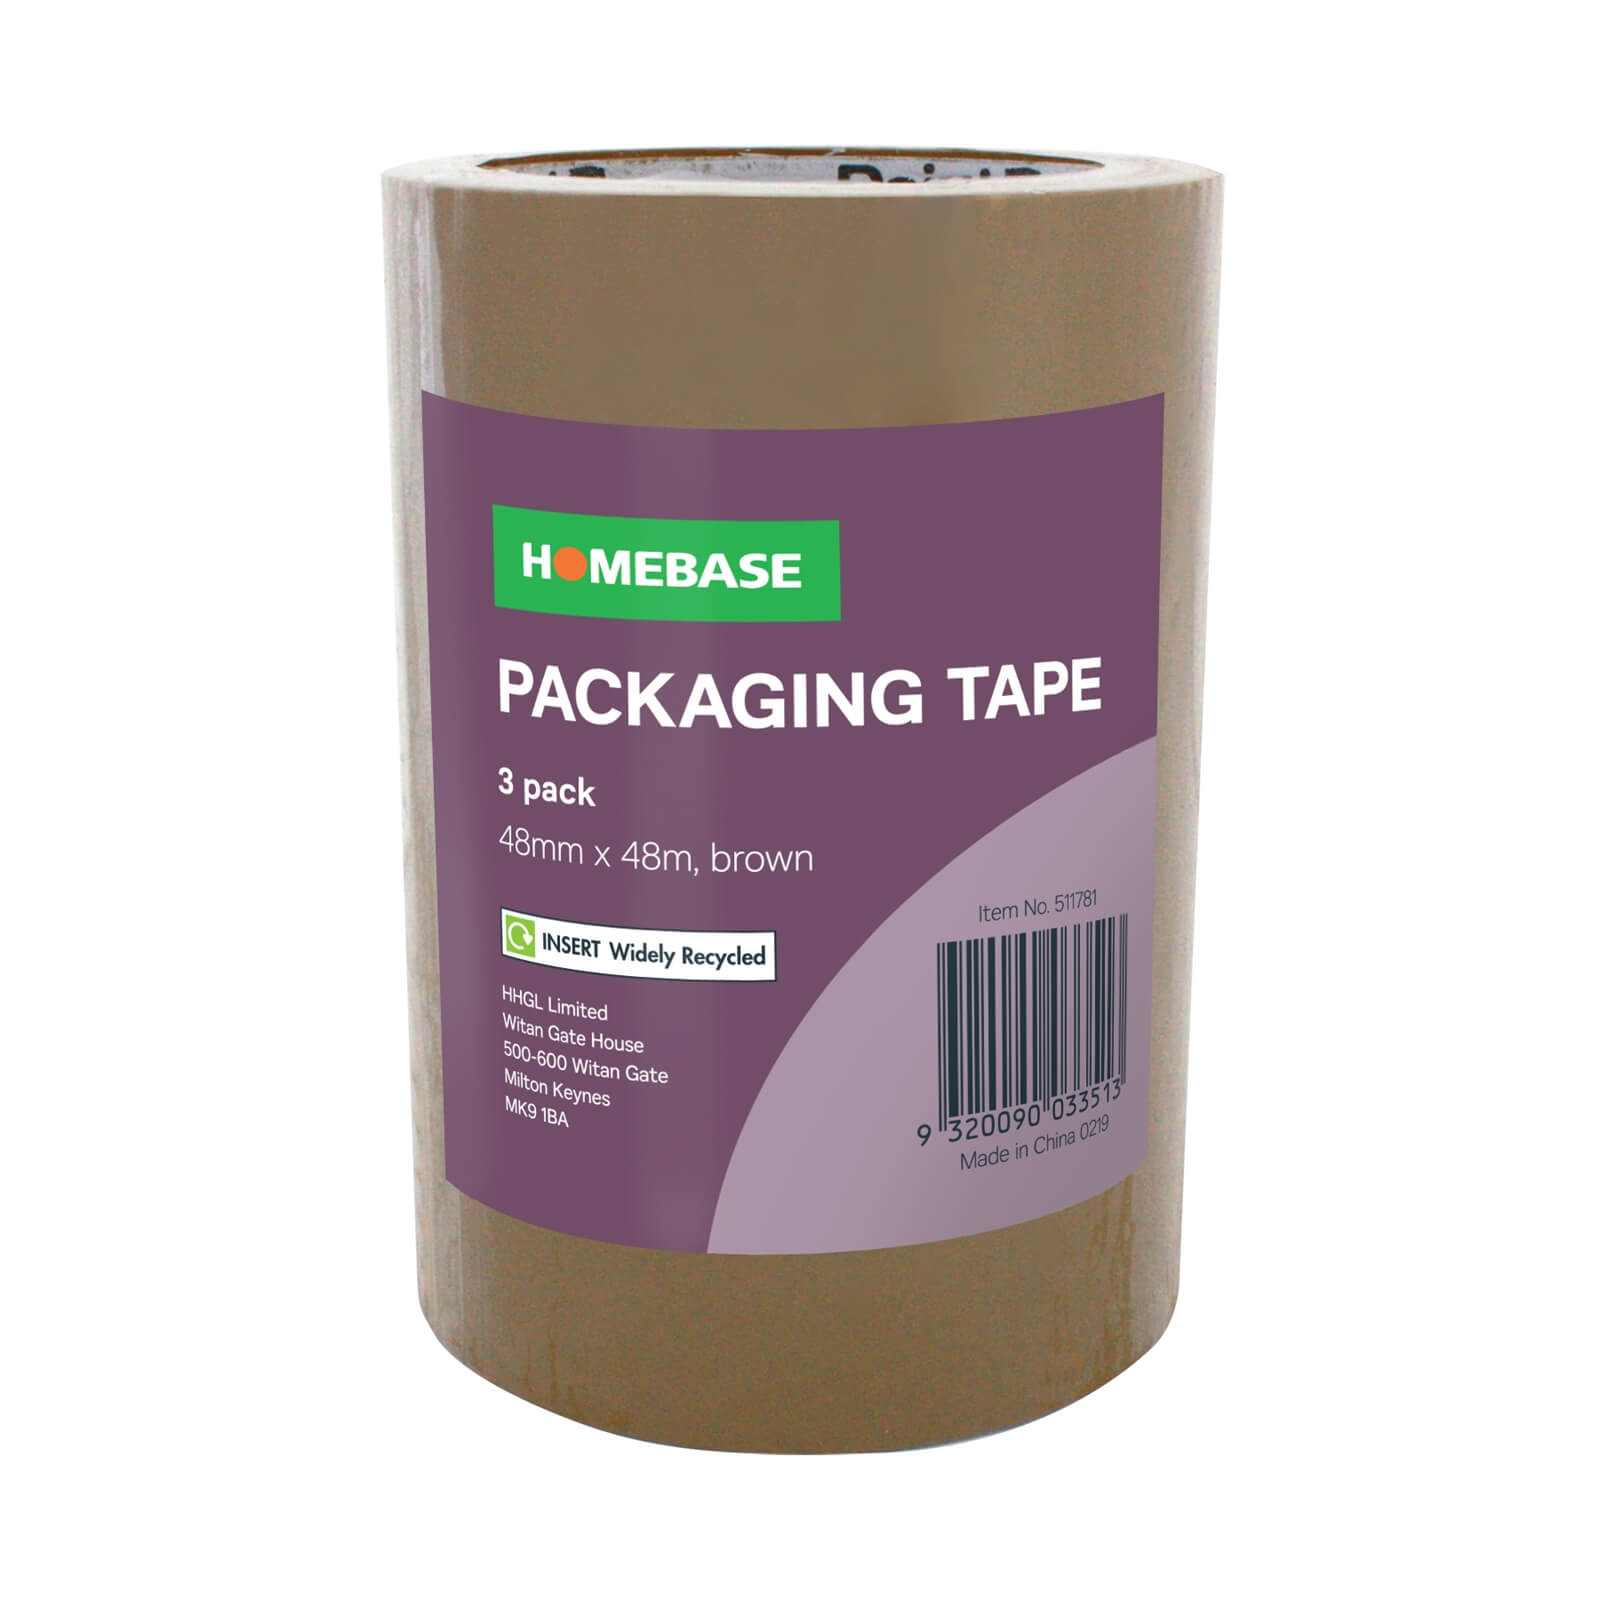 Homebase Packaging Tape 3 pack - Brown